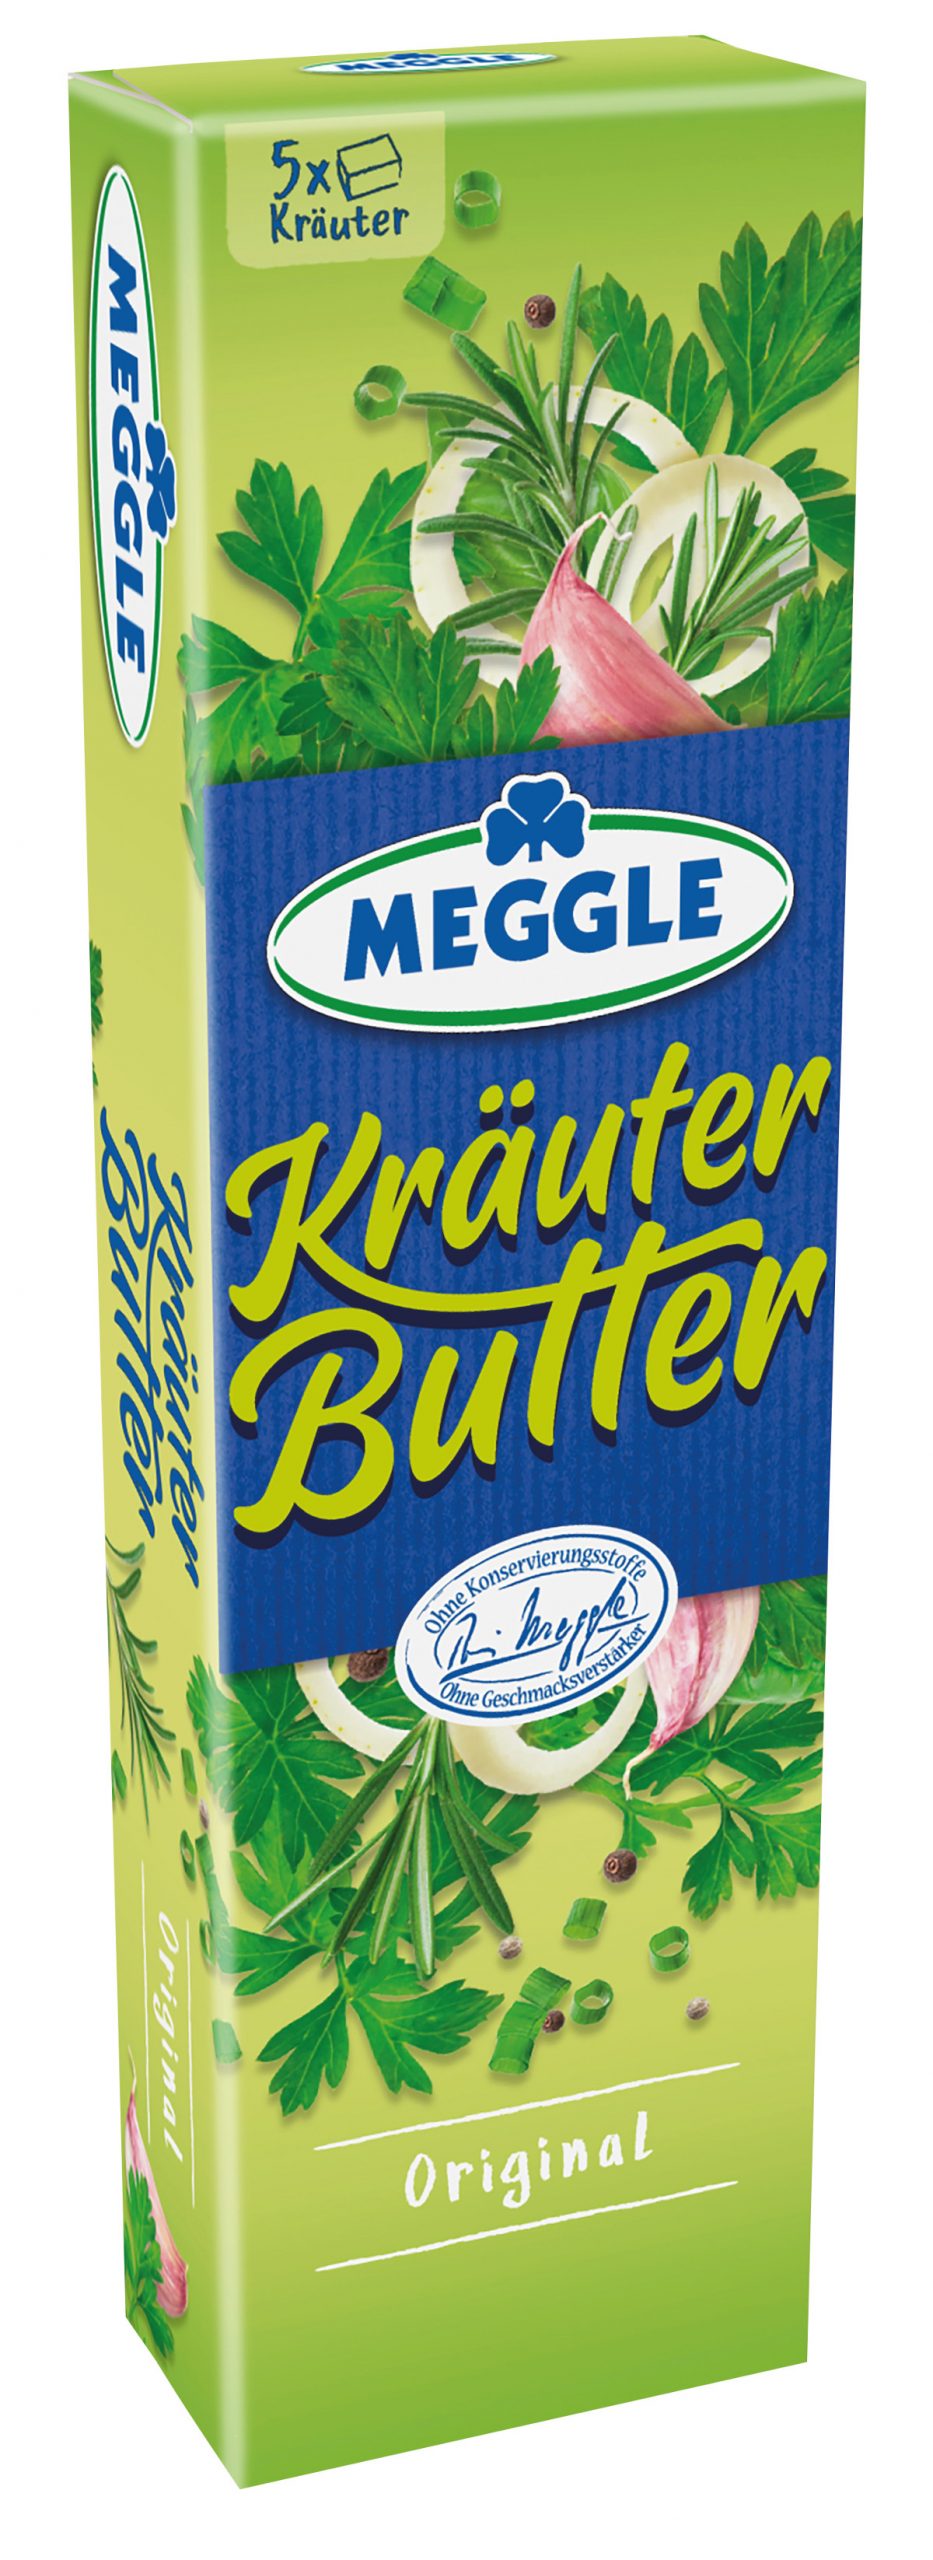 Meggle_Foodservice_KraeuterButter_Riegel_5x20g_923x2560